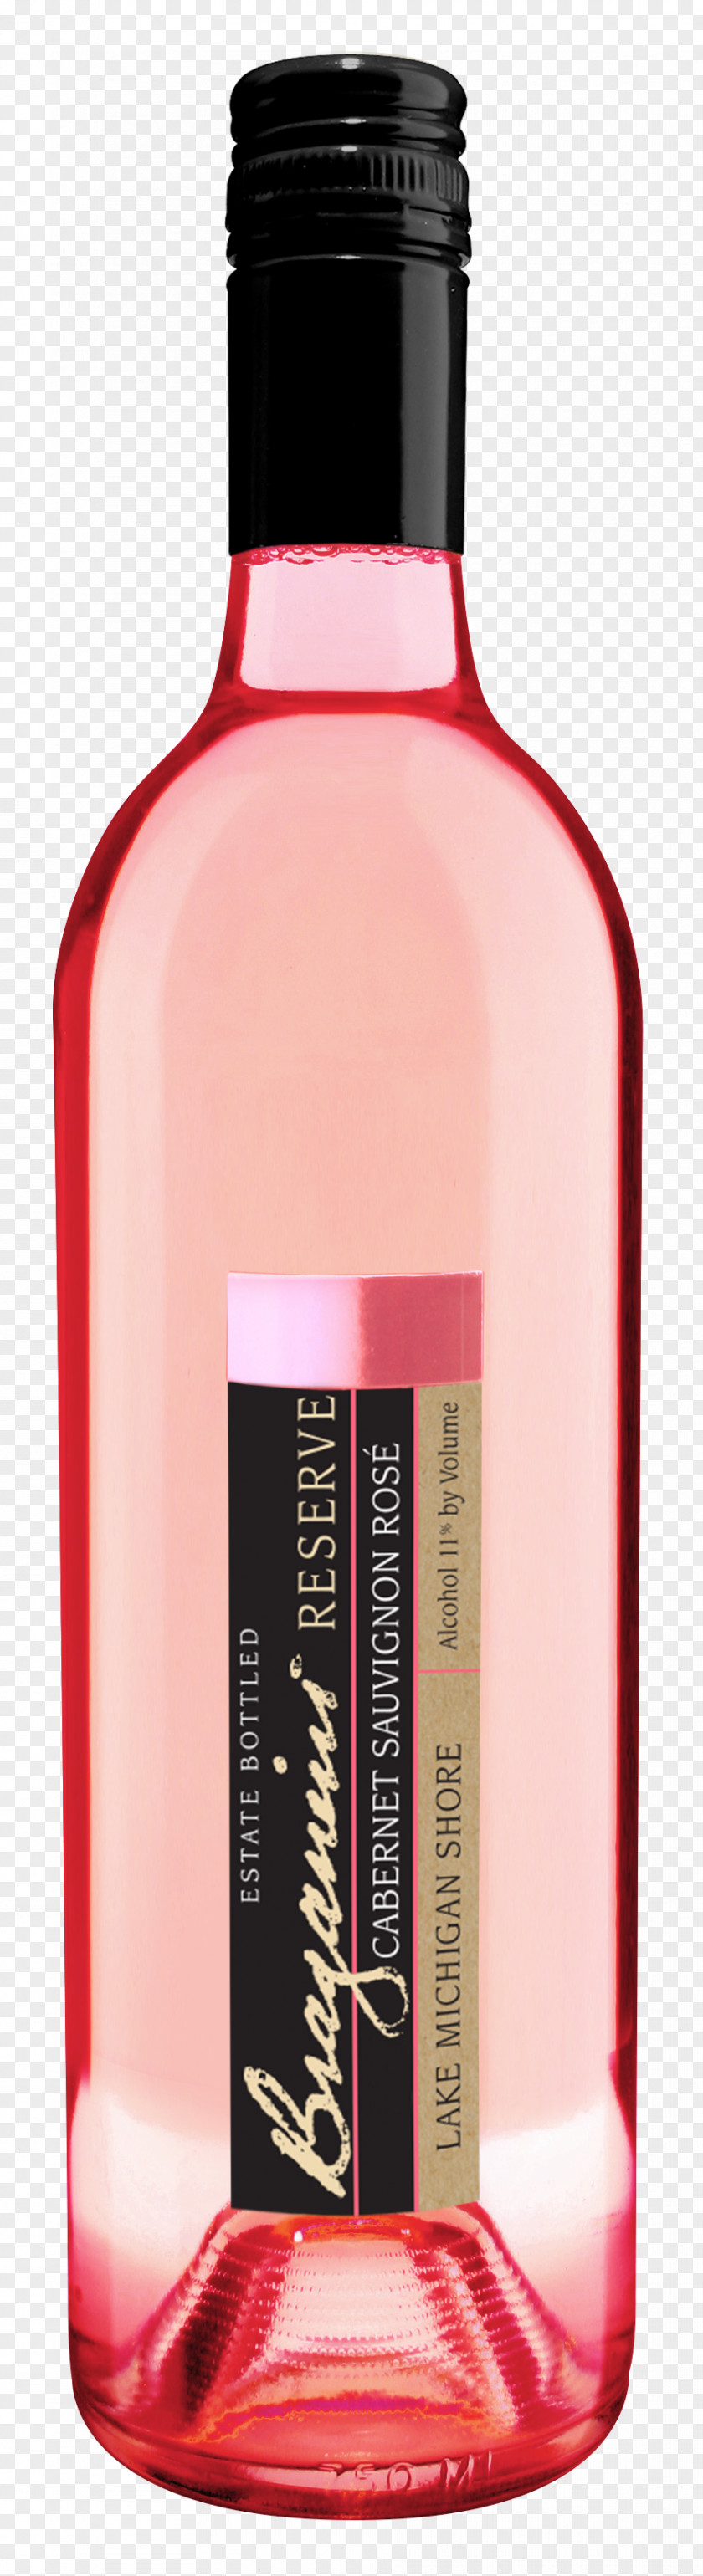 Wine Liqueur Product Bottle LiquidM PNG